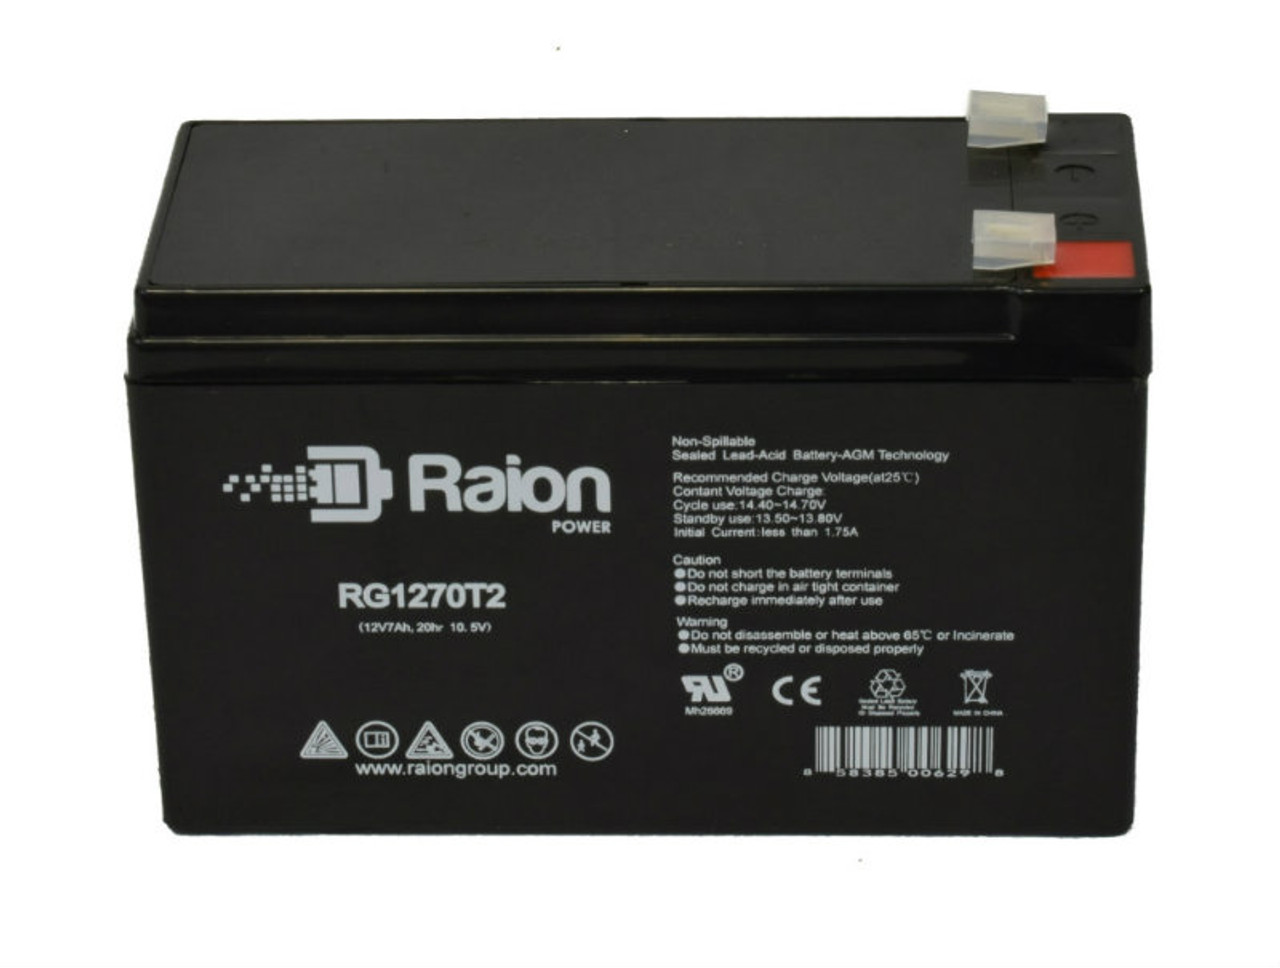 Raion Power RG1270T2 12V 7Ah Lead Acid Battery for Wing ES 7-12vds